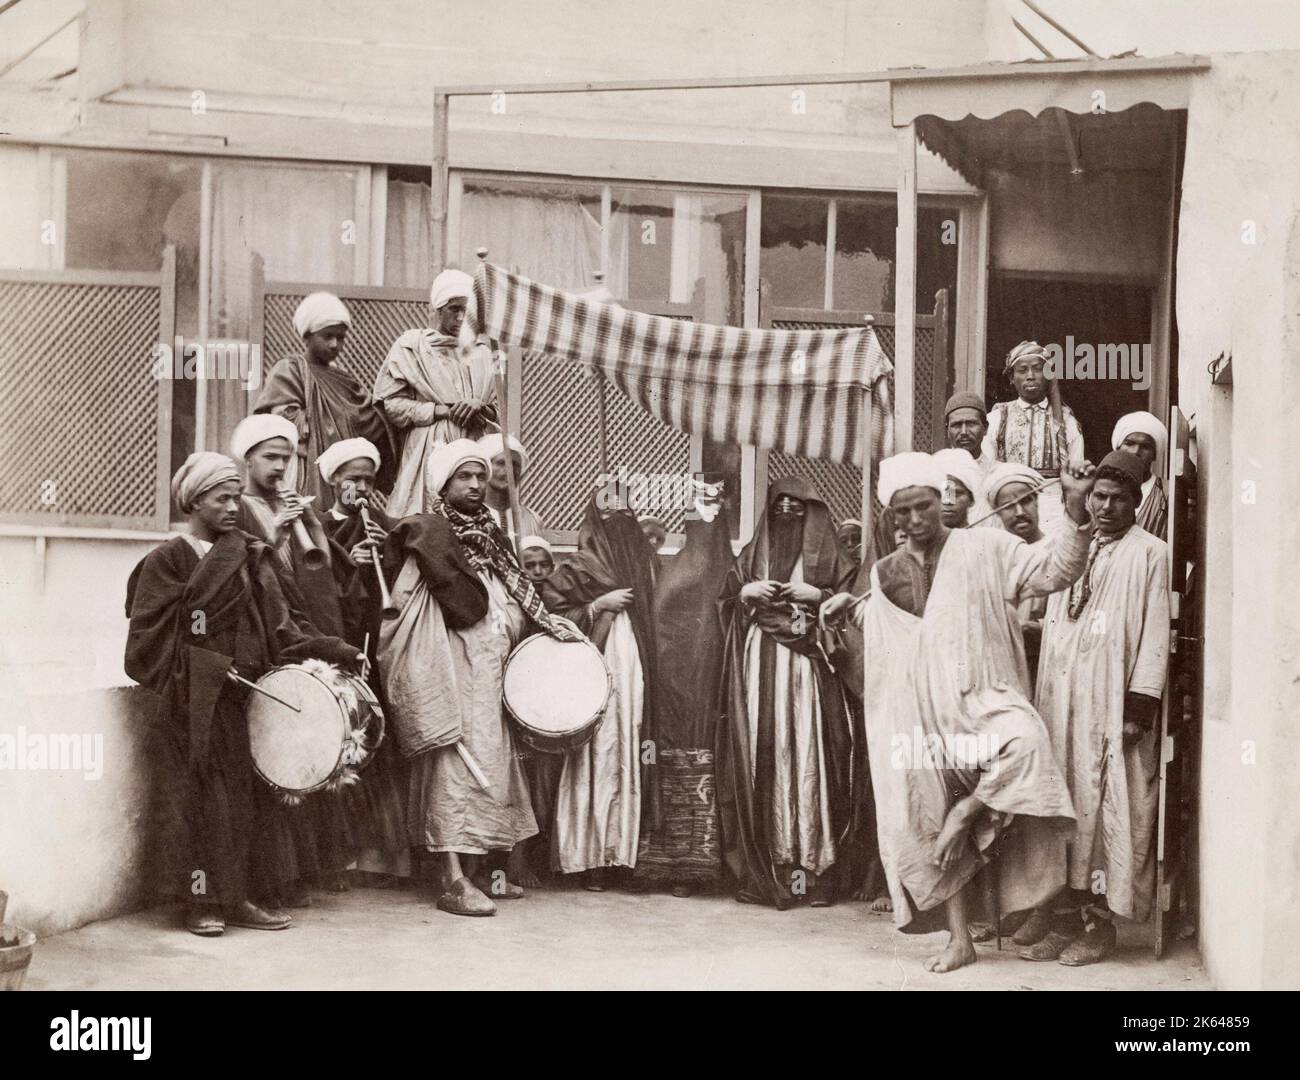 Fotografia d'epoca del XIX secolo - processione araba di matrimoni con musicisti, Egitto, circa 1880, foto dello studio Sebah. Foto Stock